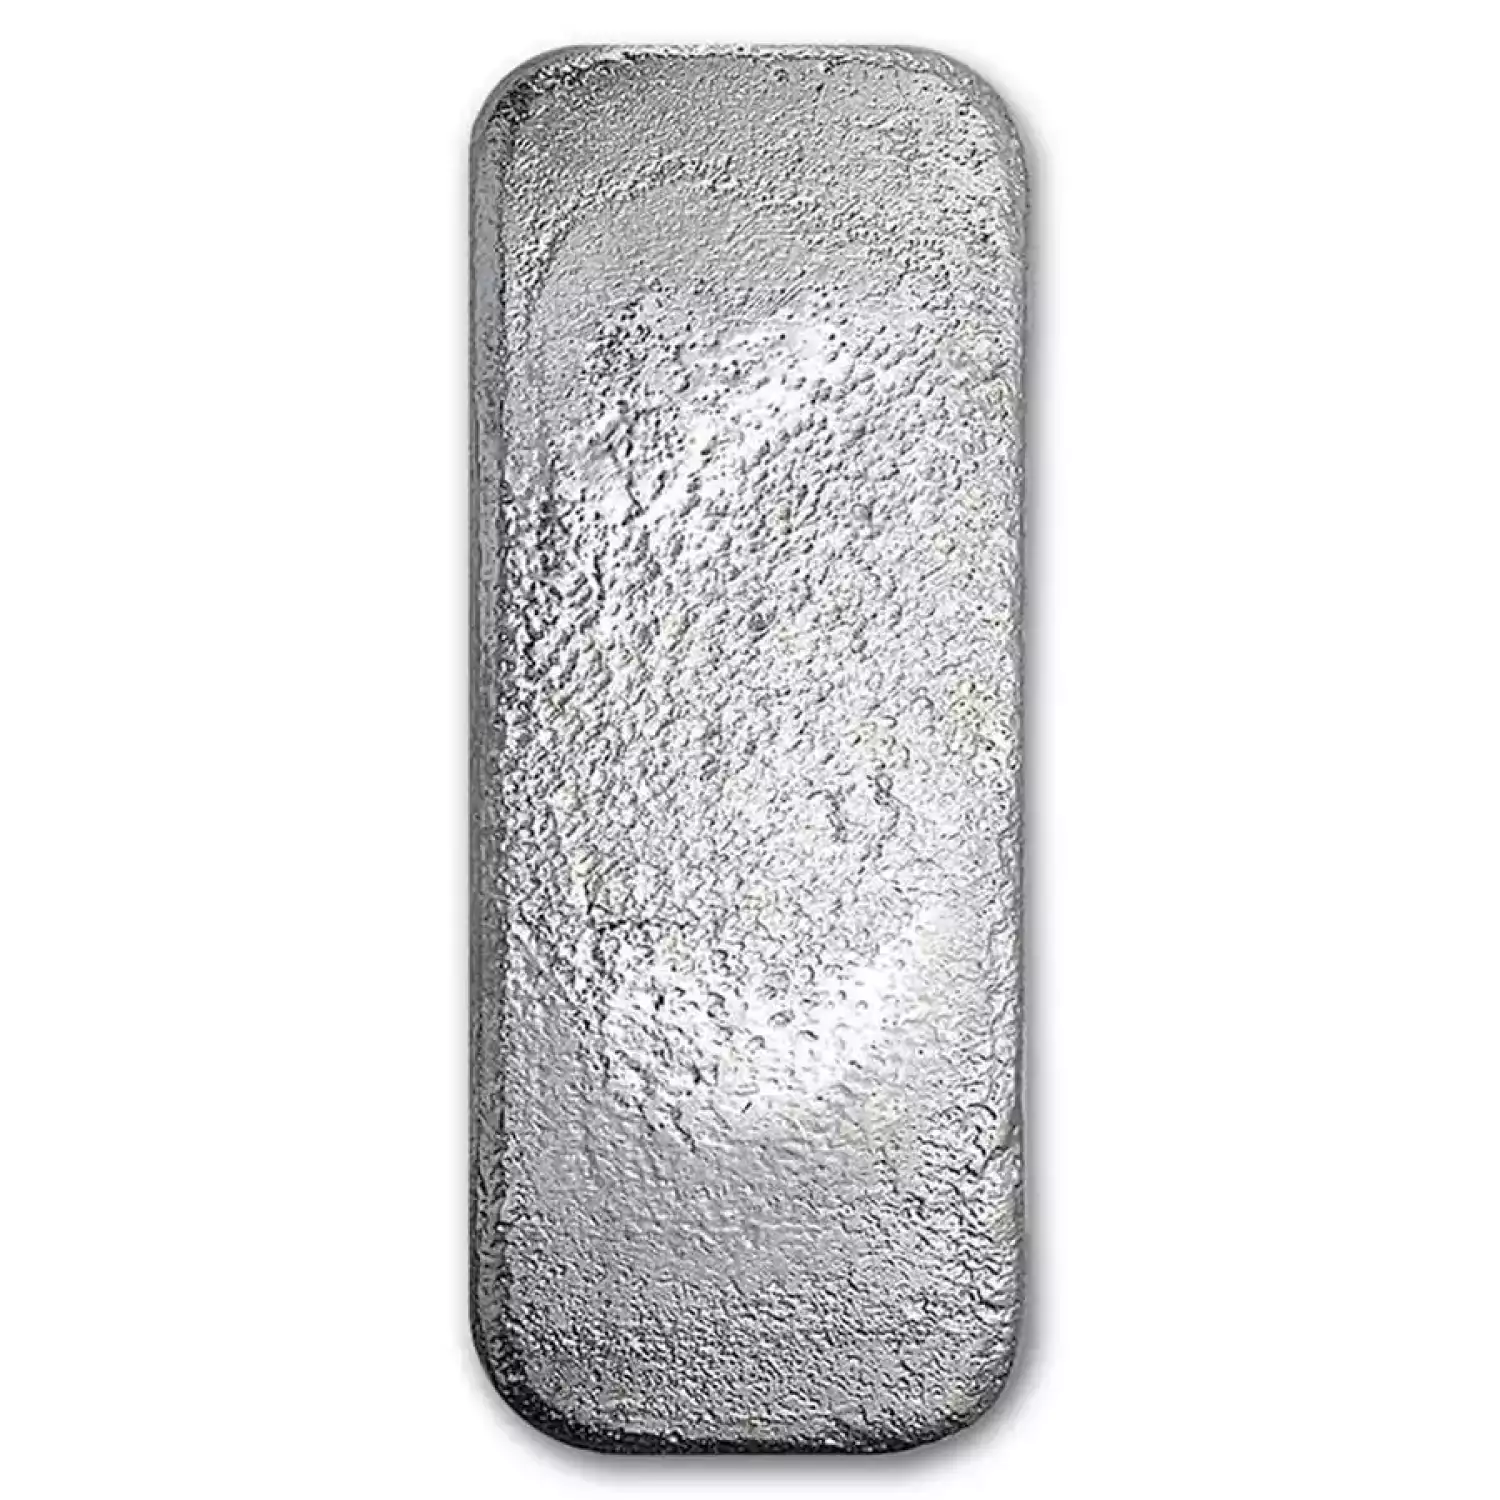 100 oz Silver Bar - Asahi (2)